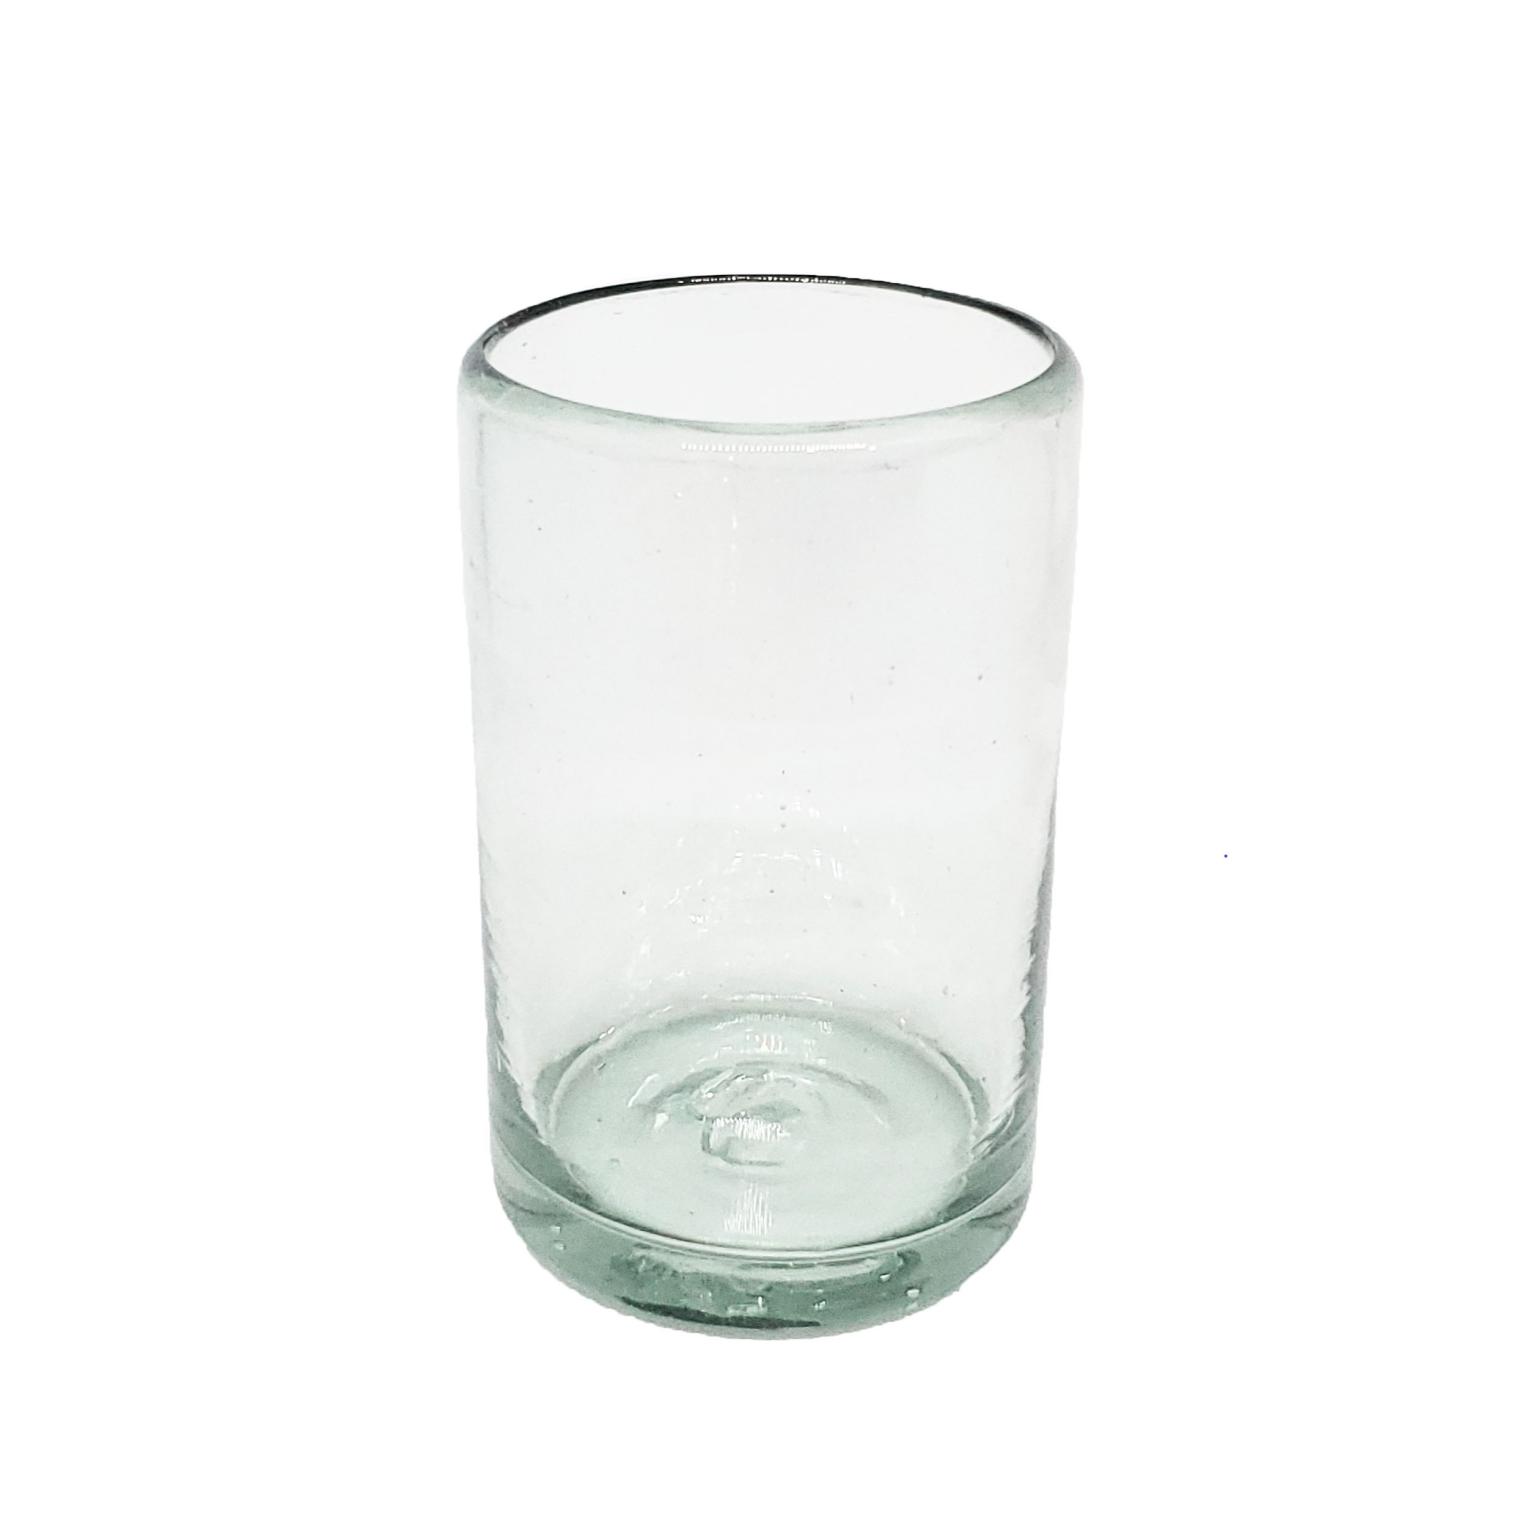 Novedades / vasos Jugo 9oz Transparentes / stos artesanales vasos le darn un toque clsico a su bebida favorita.